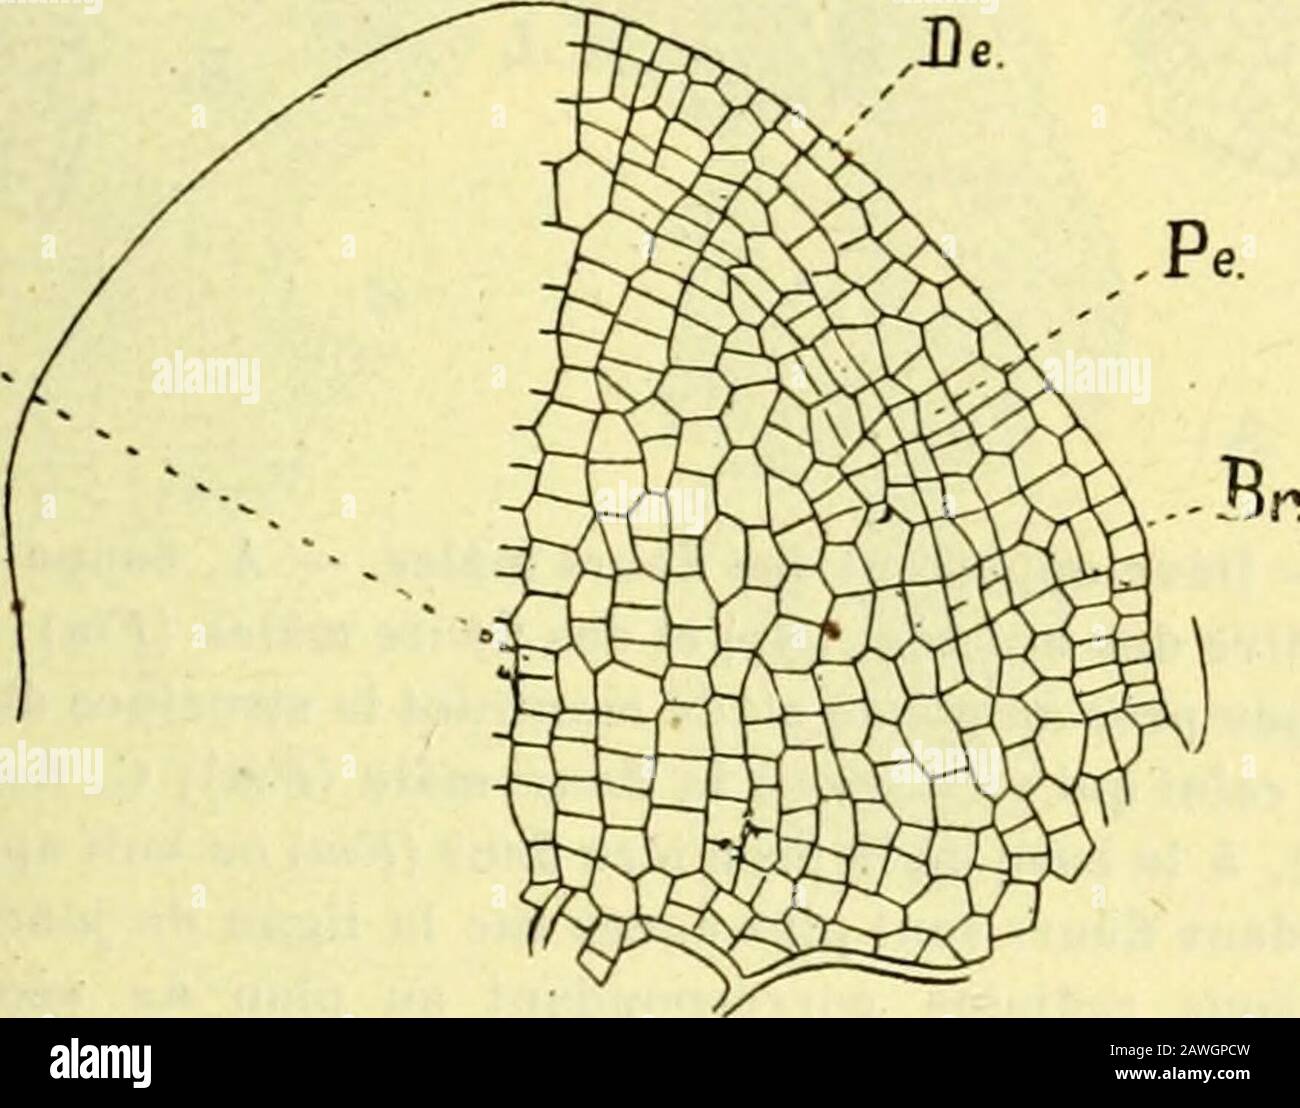 Actes de la Socilinnnne de Bordeaux . ris (fig-. 44) se présente sous la forme dun bourg-eonarrondi à la base duquel on voit sépanouir les faisceaux fibro-vasculaires et les laticifères qui vont vers laxe ou dans la bractée axillaire. Ce bour-g-eon est recouvertdune couche decellules aplaties etrégulières qui enconstitue len-veloppe {dermato-Cjène Hanstein) etqui se divisent pardes cloisons radialesau fur et à mesurequil saccroît ; danssa masse on distin-gue deux zones :lune, externe, com-prend q uatre ou ci nqassises dont les cellules très riches en protoplasma se divisent pardes cloisons tan Stock Photo